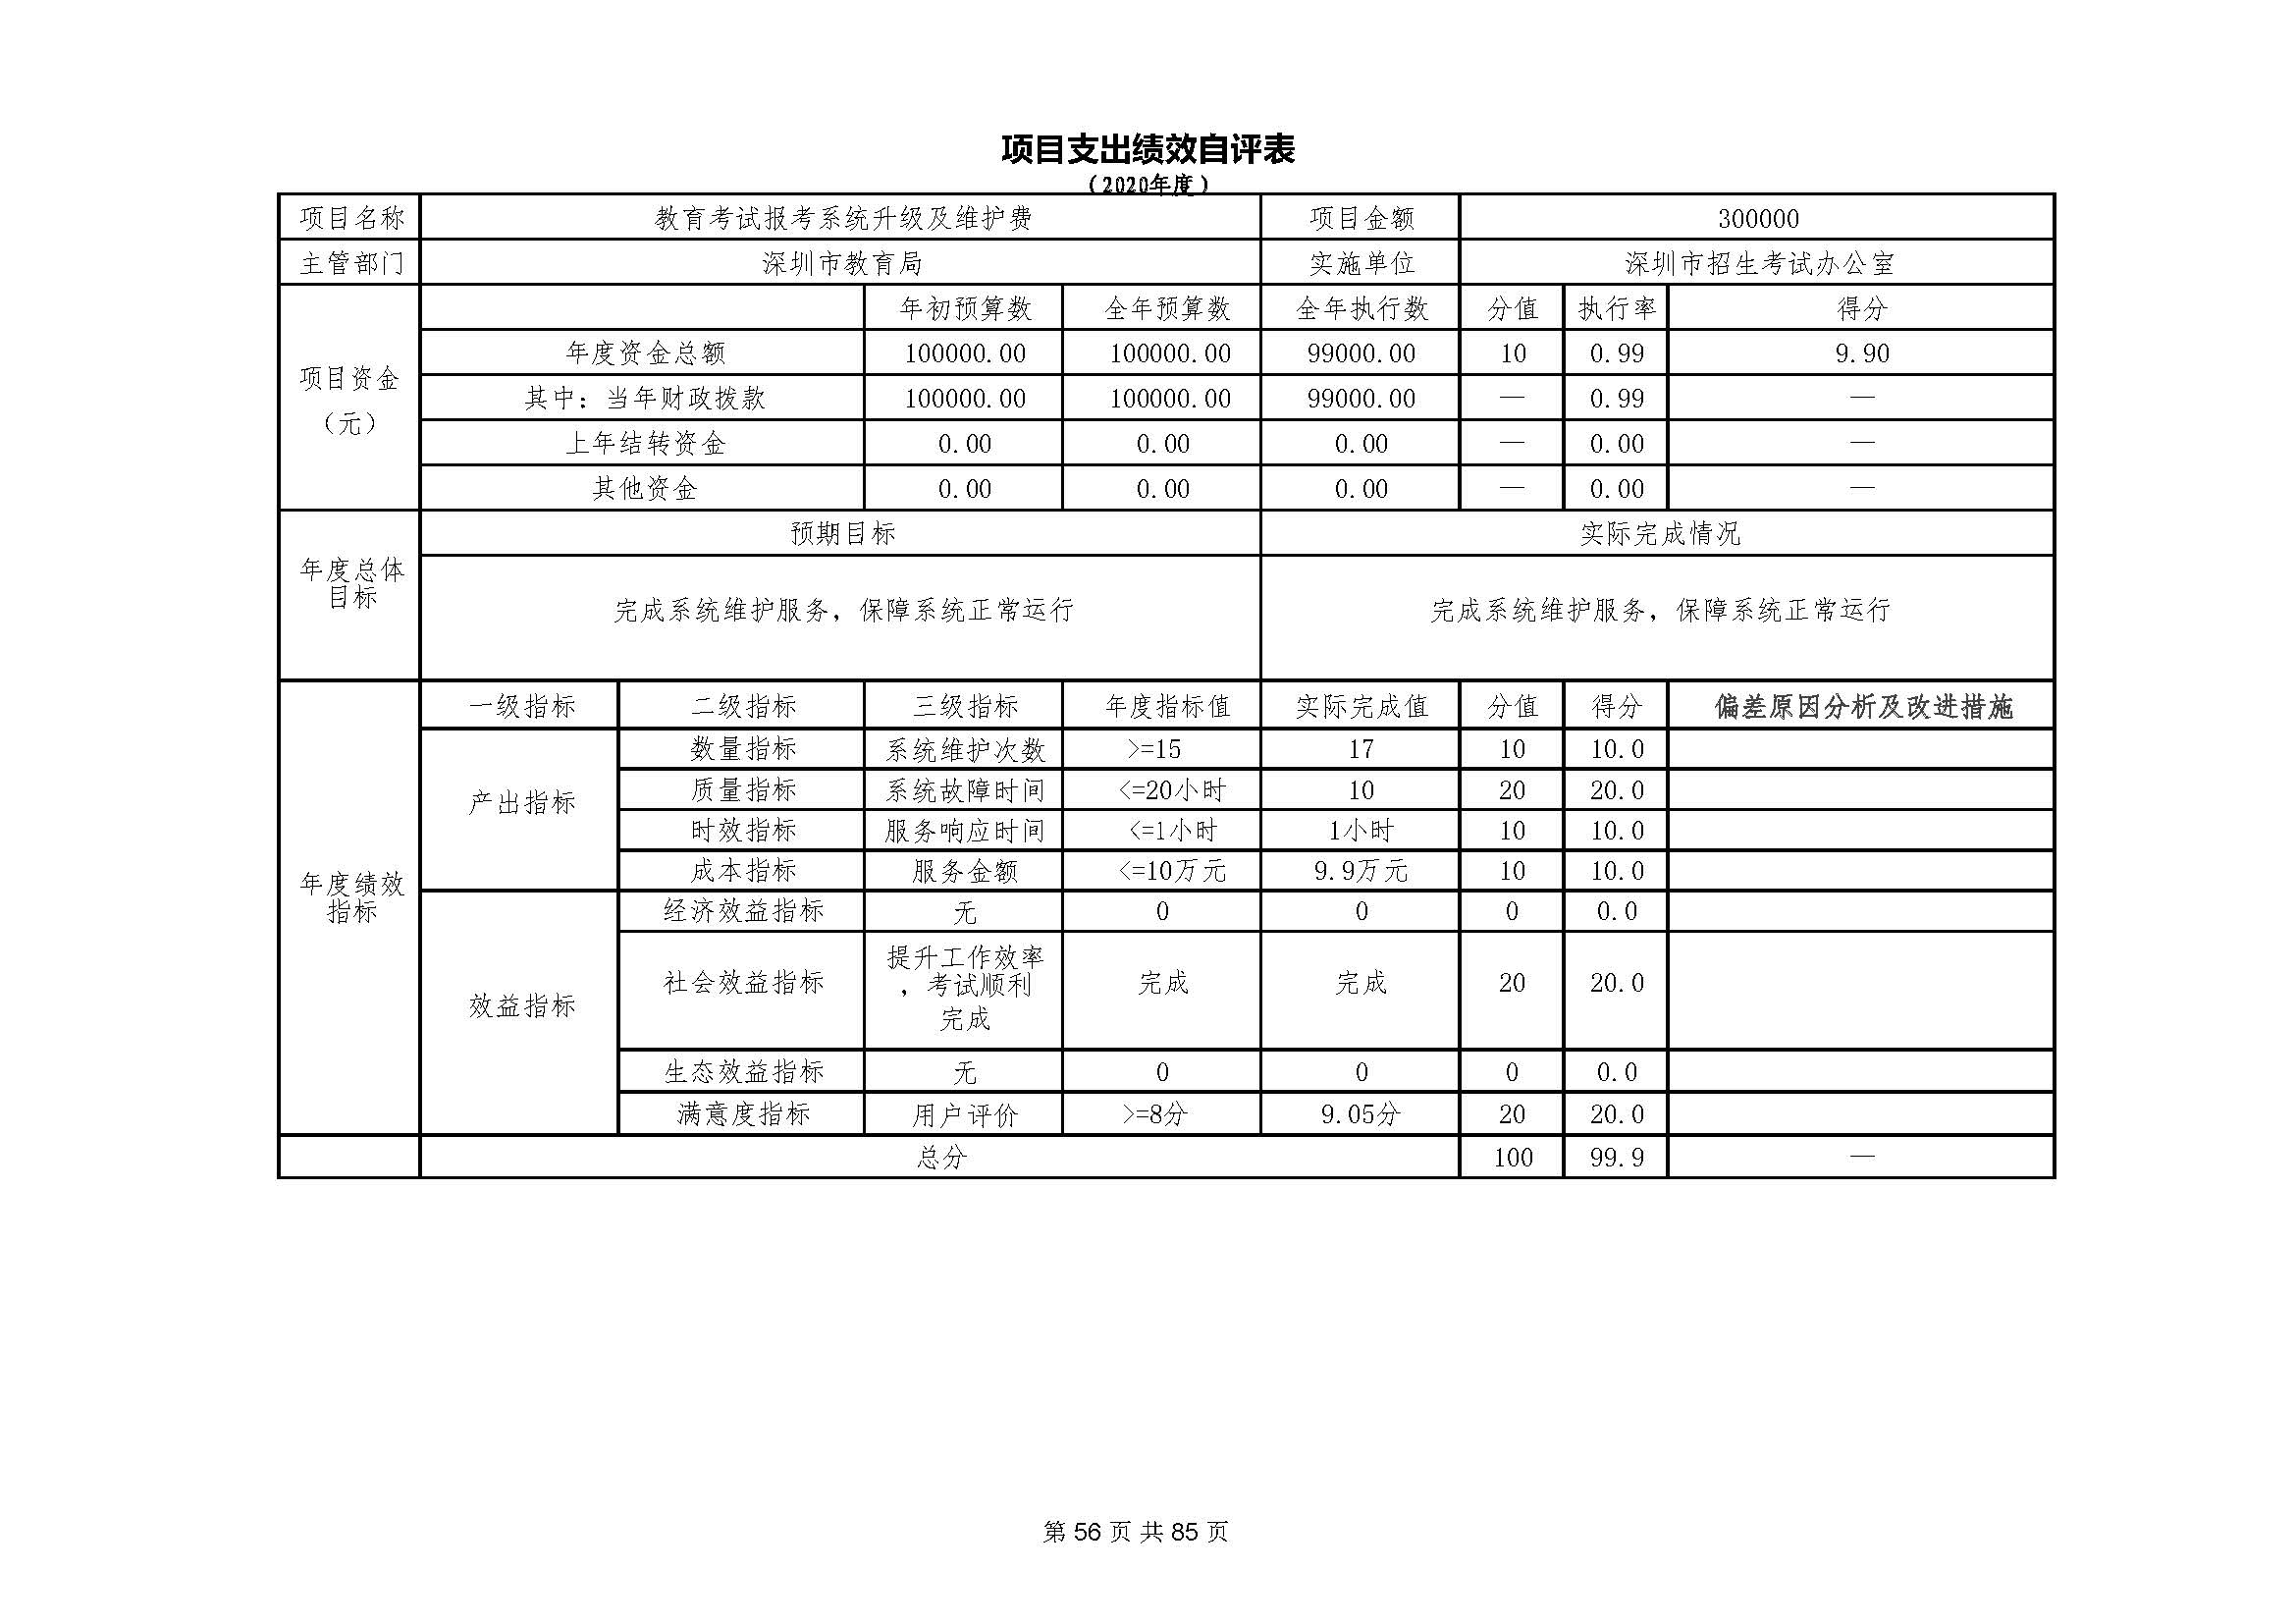 深圳市招生考试办公室2020年度部门决算_页面_57.jpg